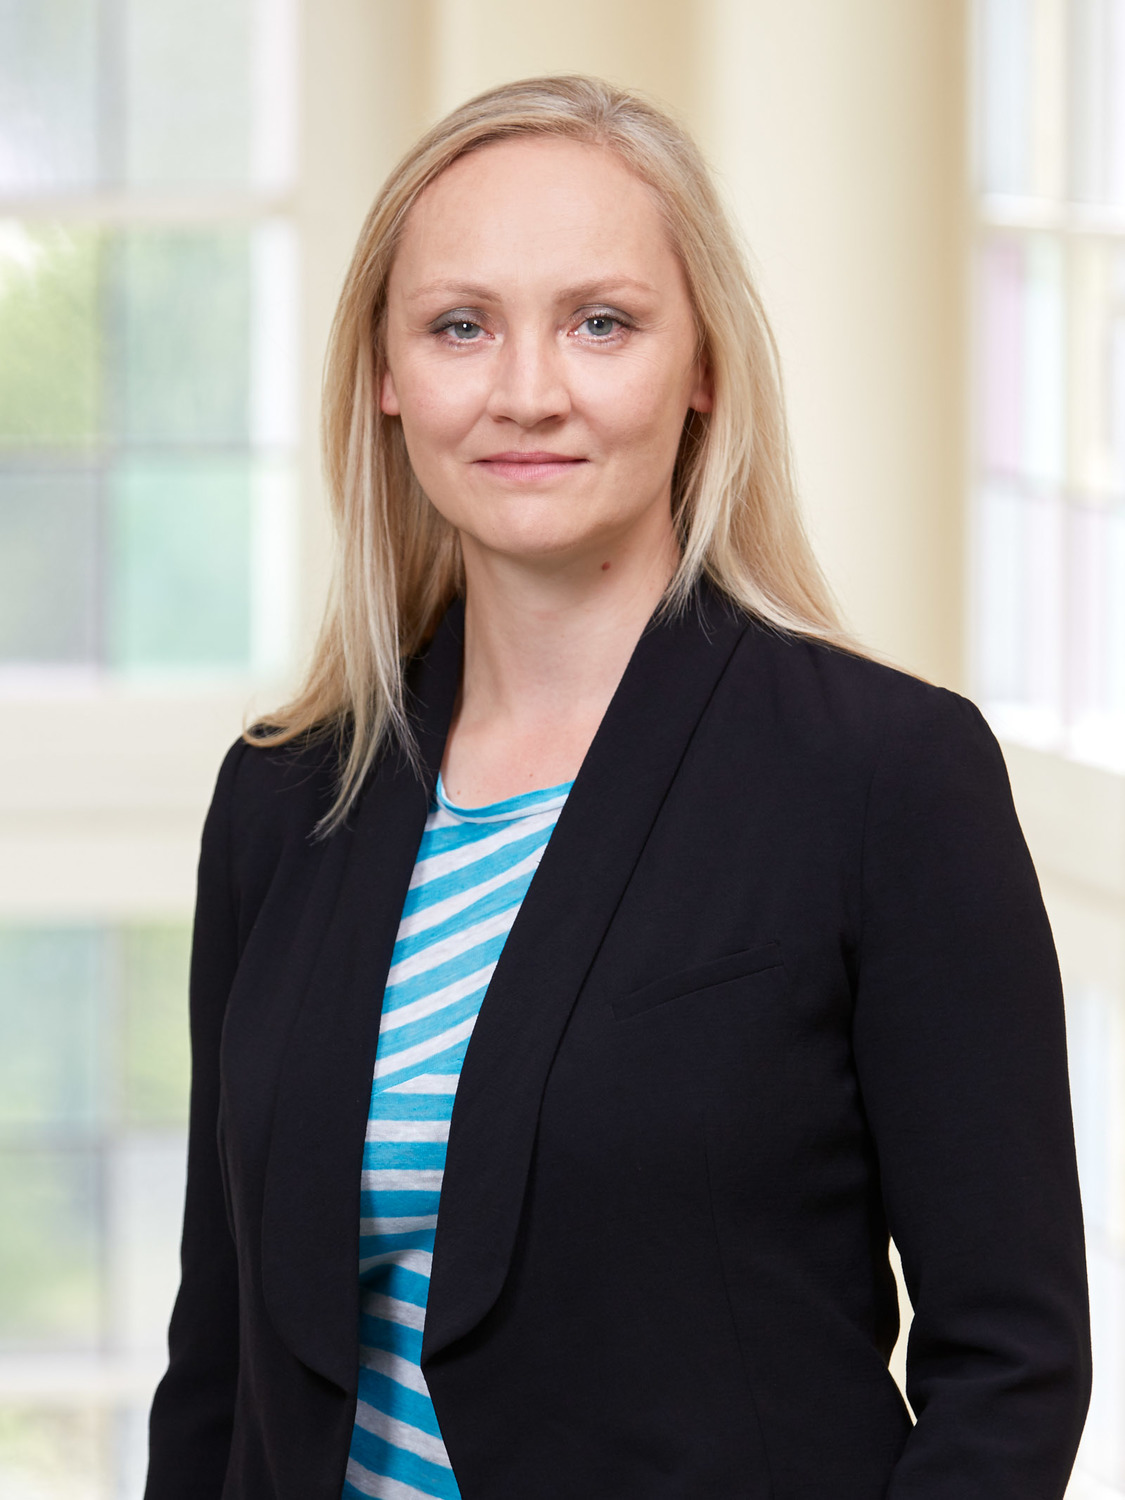 Prof. Dr. Anja Mehnert-Theuerkauf